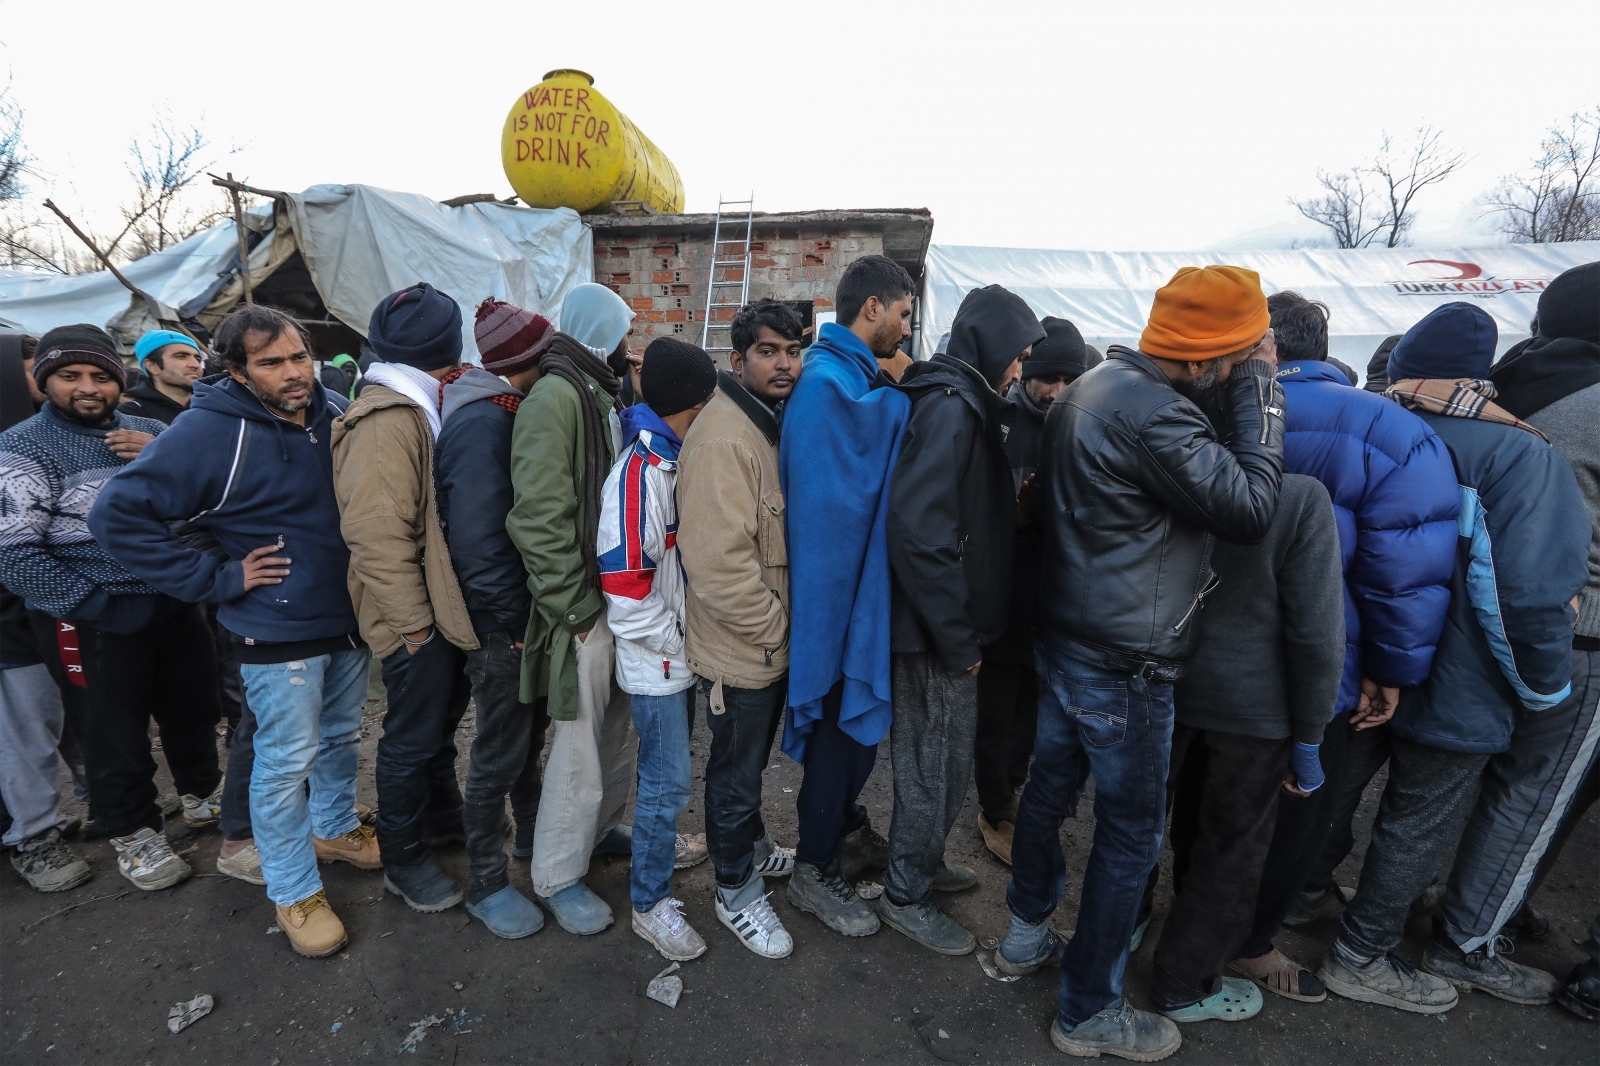 09.12.2019., Bihac - Izbjeglicki kamp na Vucjaku, migranti cekaju odluku Kantonalnih vlasti o preseljenju na novu lokaciju. Photo: Robert Anic/PIXSELL